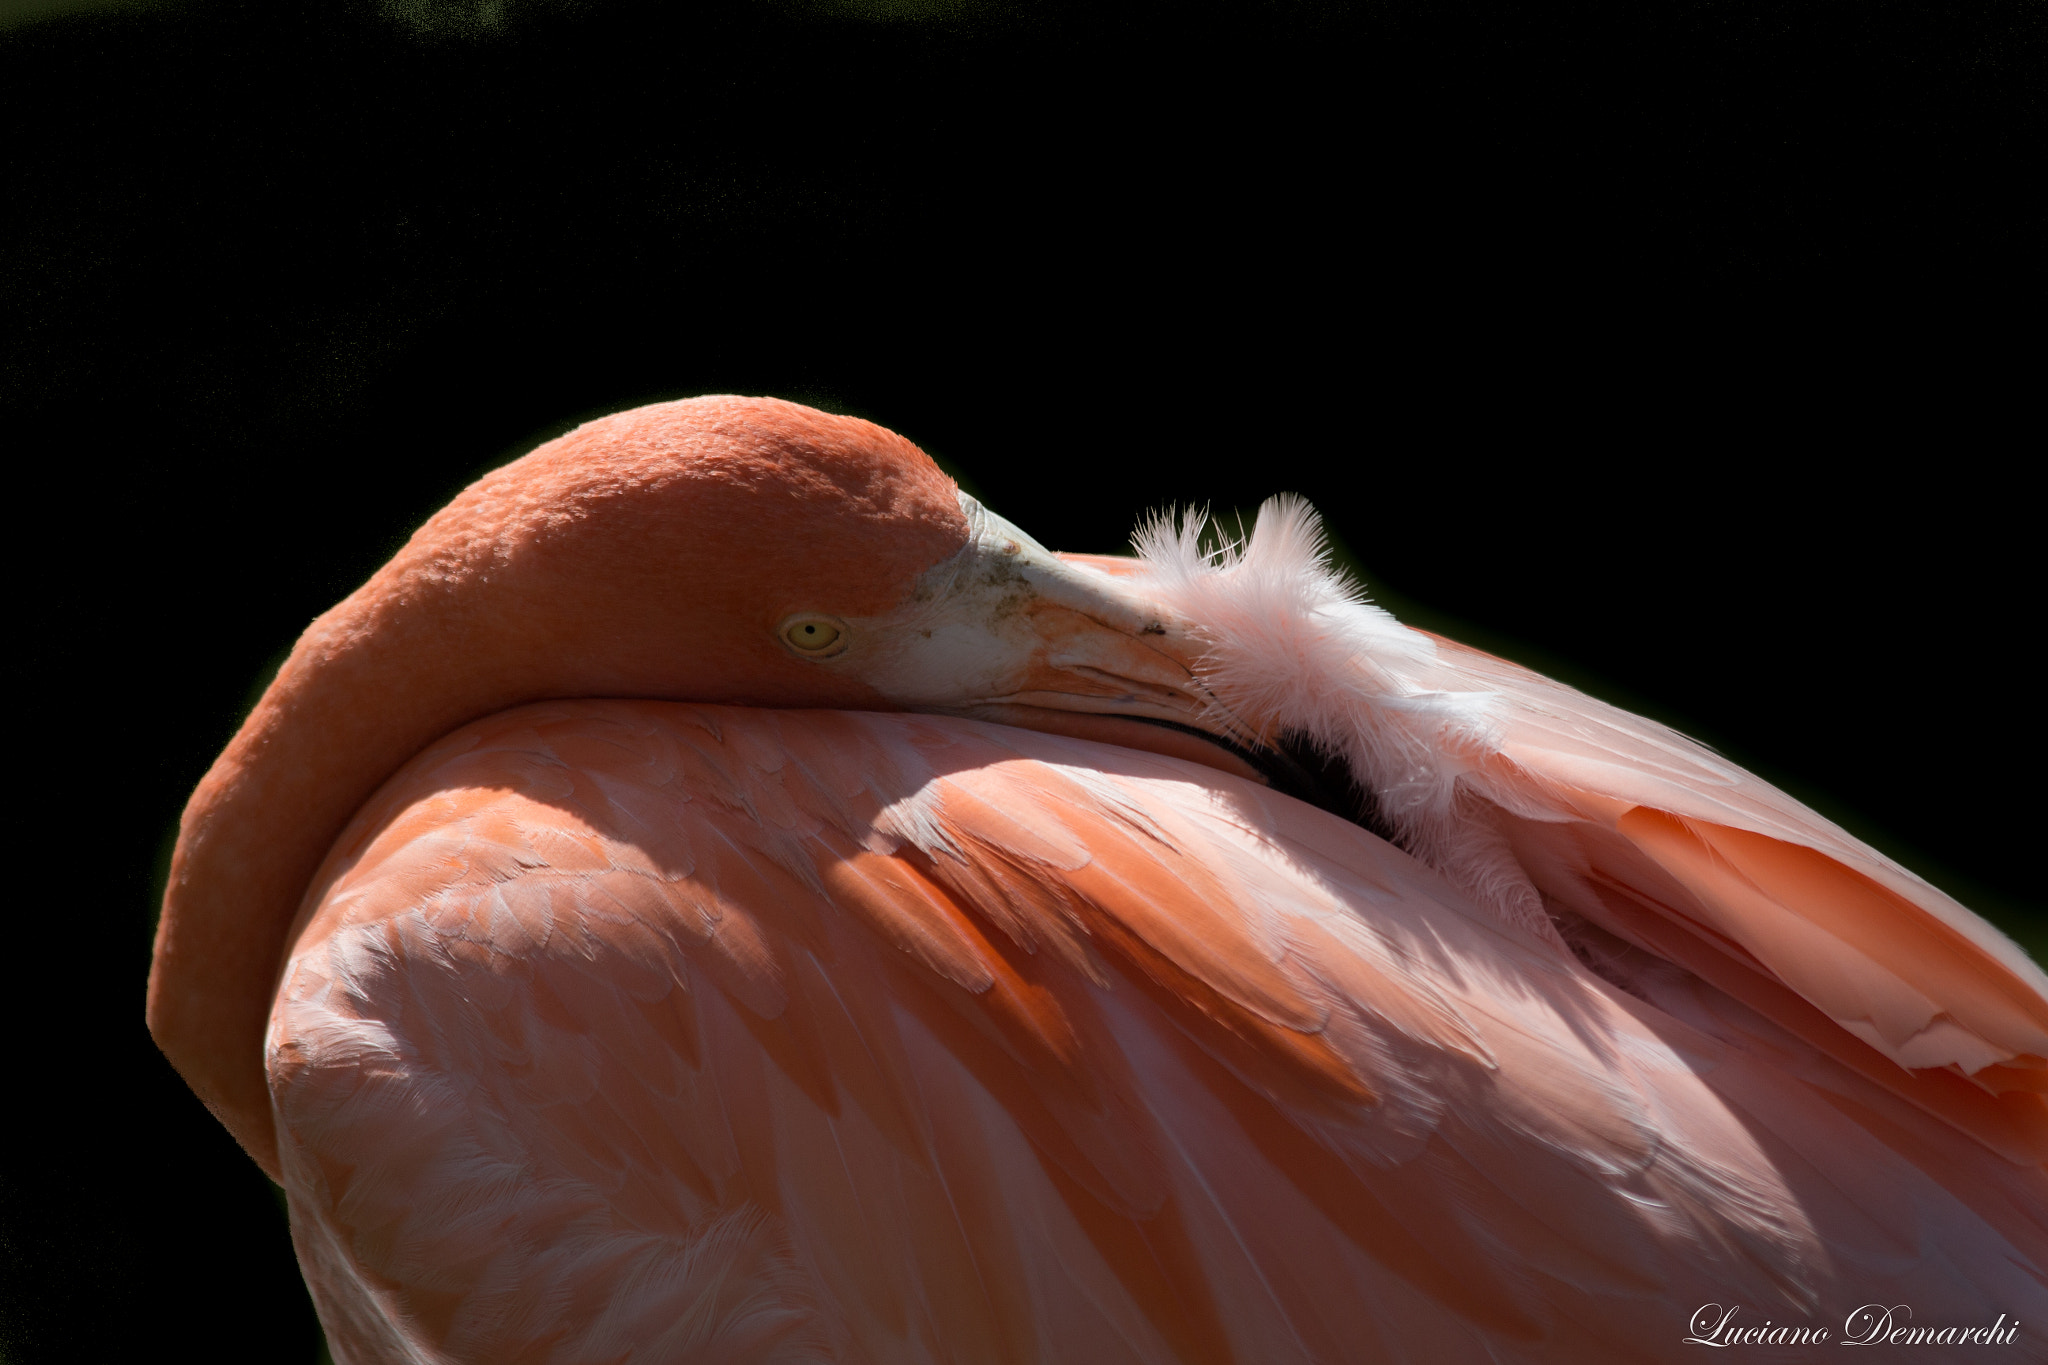 Canon EOS 100D (EOS Rebel SL1 / EOS Kiss X7) sample photo. Flamingo repdom2 photography